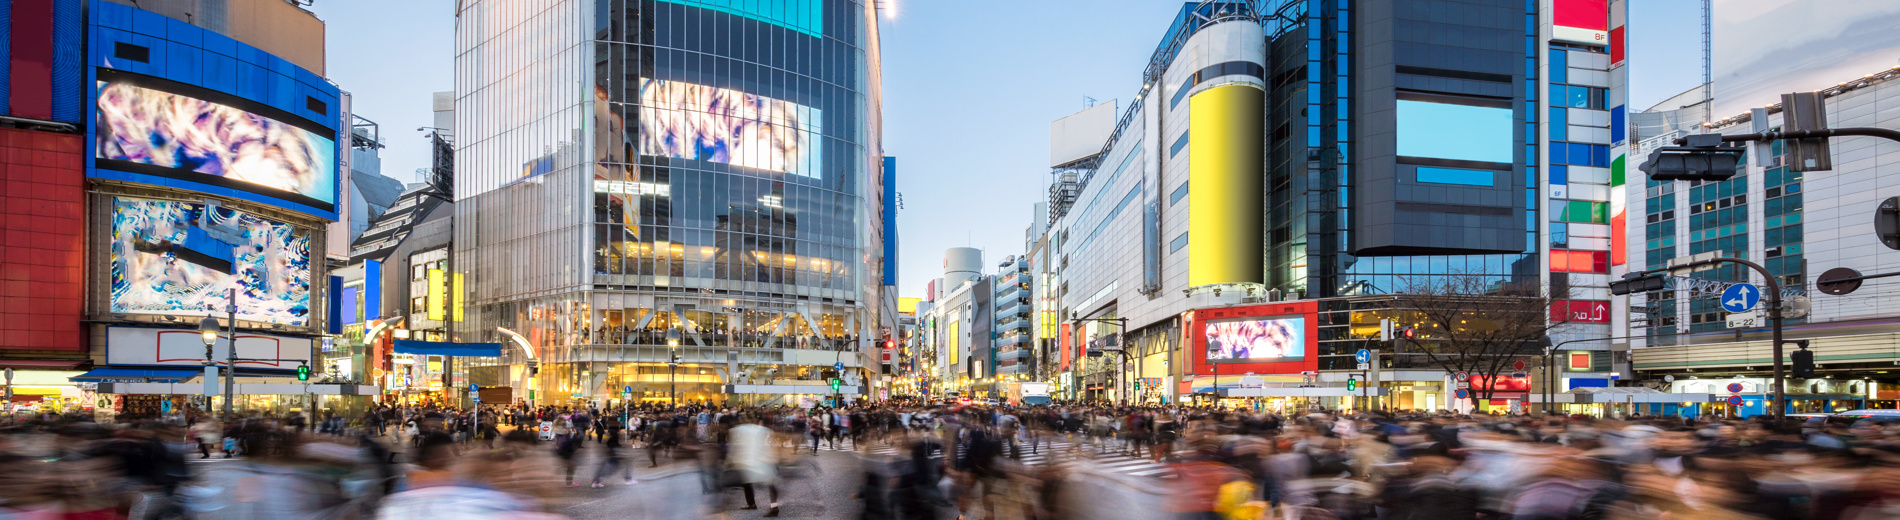 Drukke oversteekplaats van voetgangers in Tokio met kleurrijke gebouwen op de achtergrond